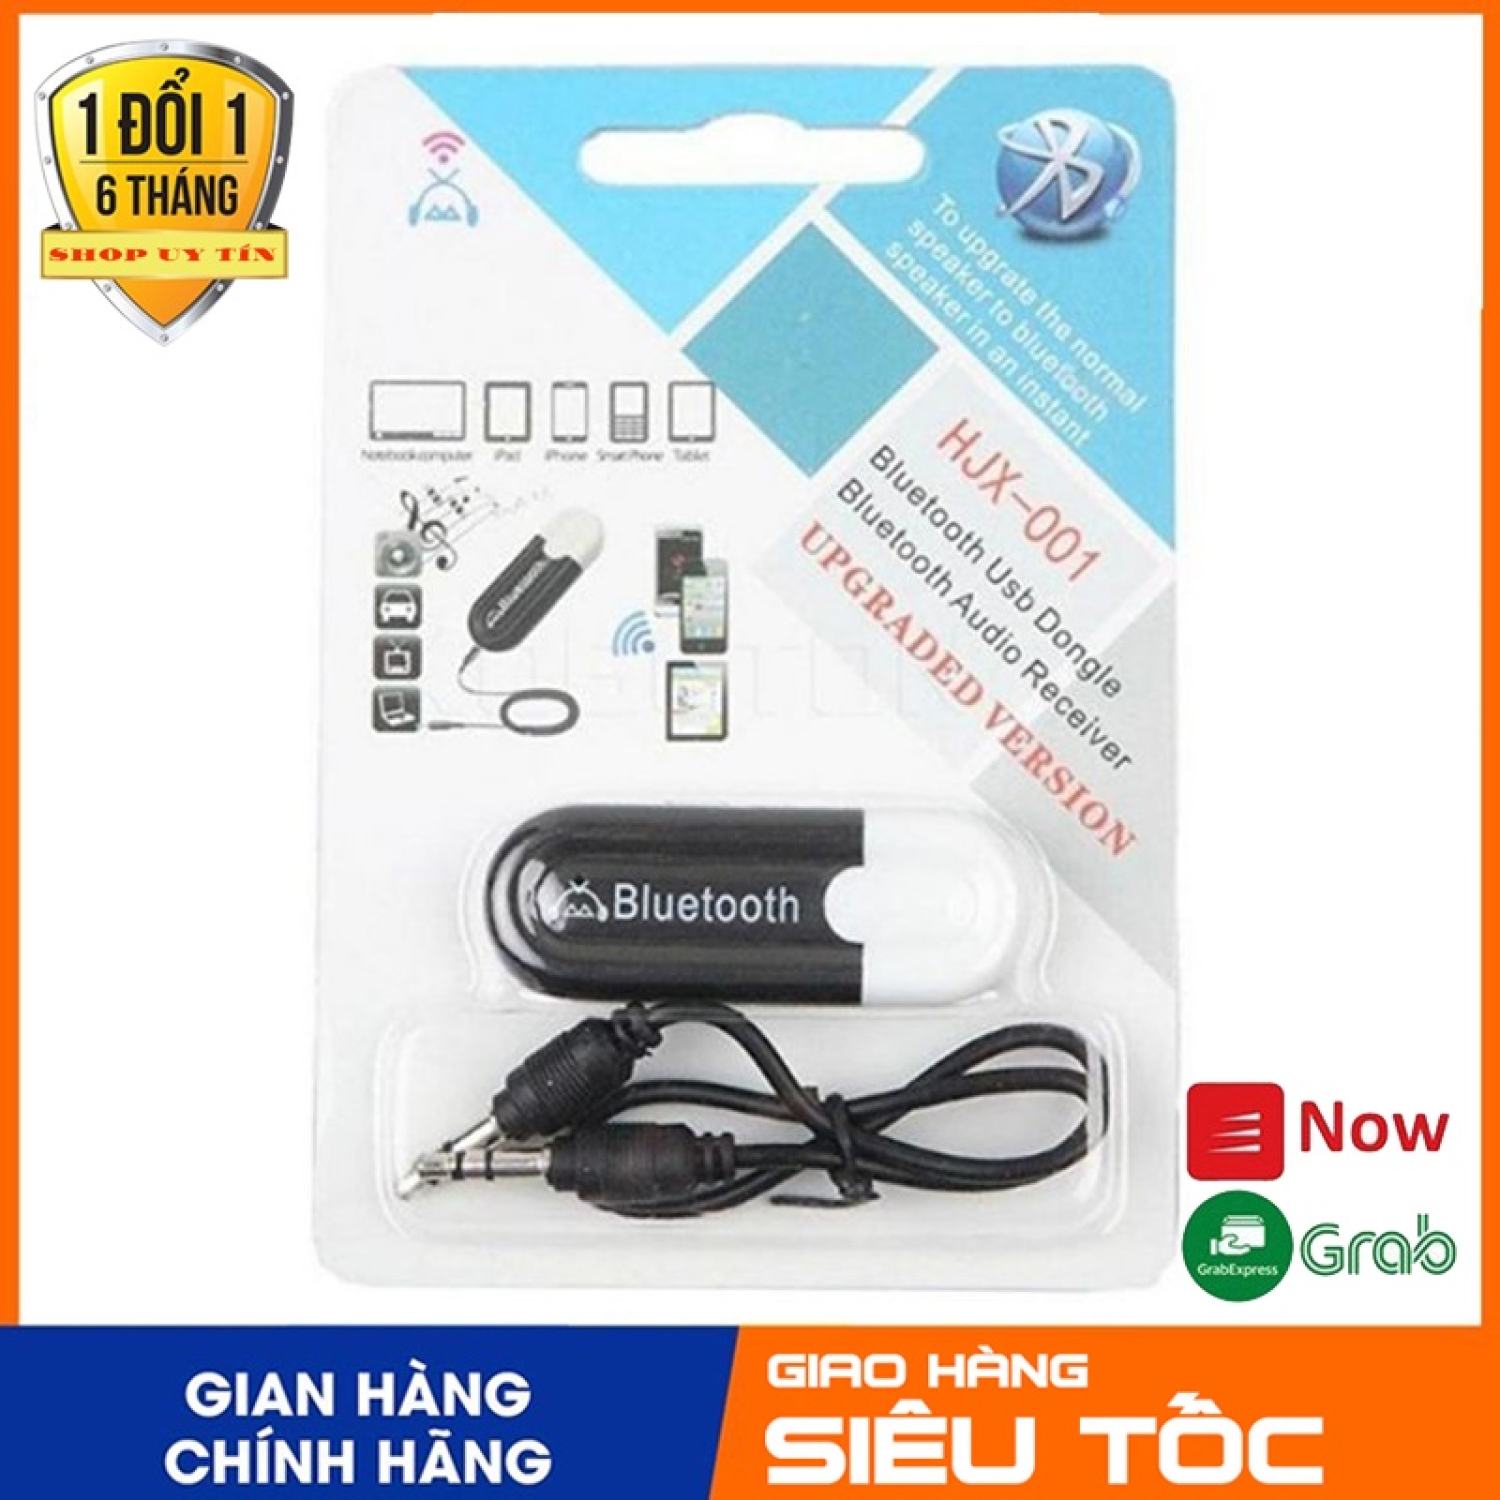 USB Bluetooth Audio 5.0 HJX-001 kết nối Blutooth cho mọi loại loa, amply, vang...hàng chuẩn, tiếng hay